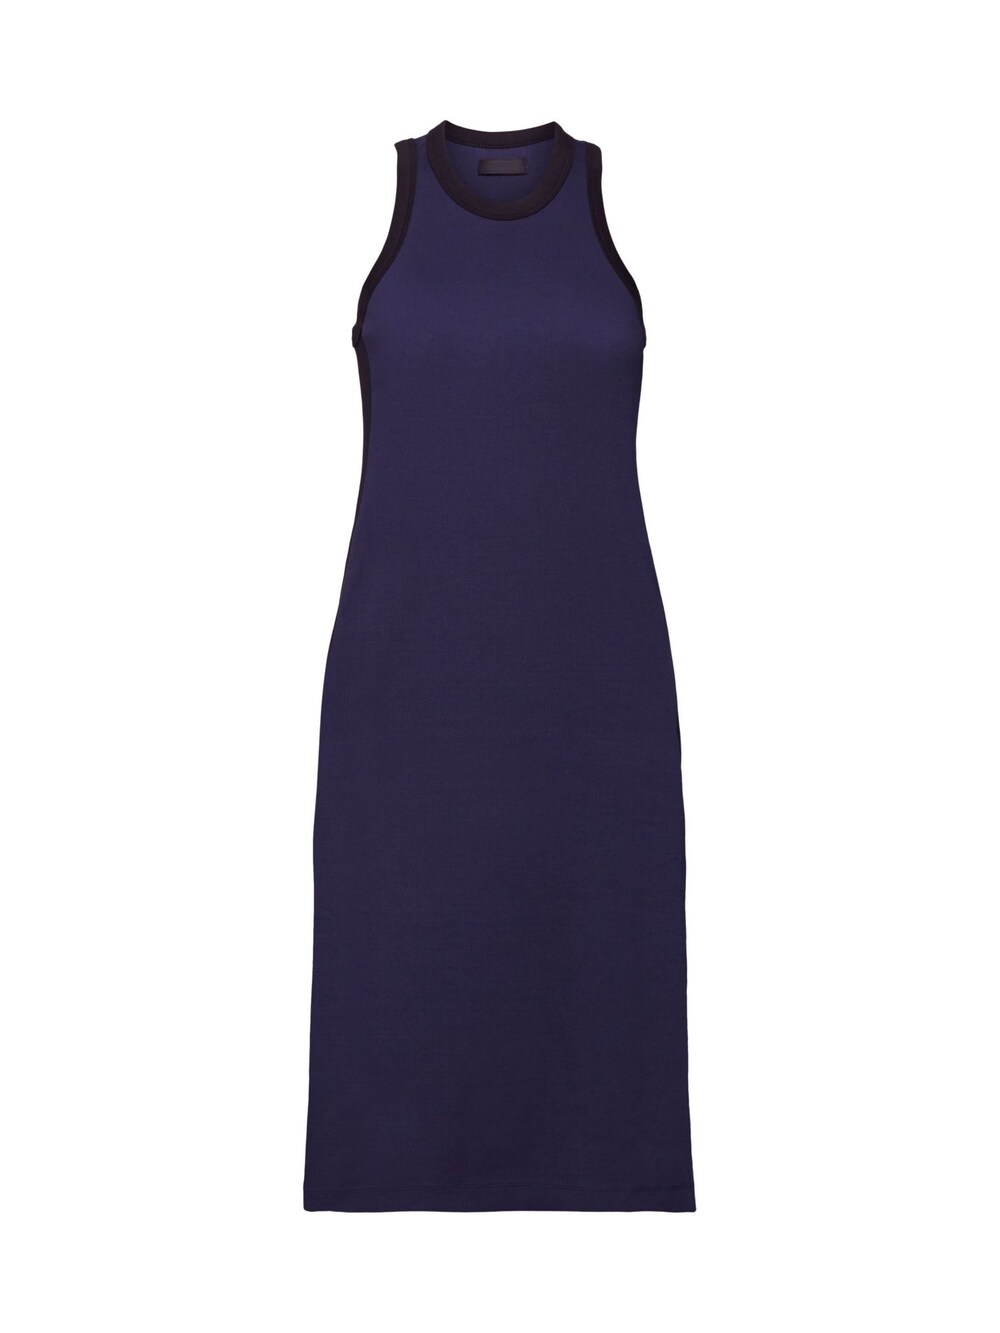 Вязанное платье Esprit, темно-синий вязанное платье esprit песок